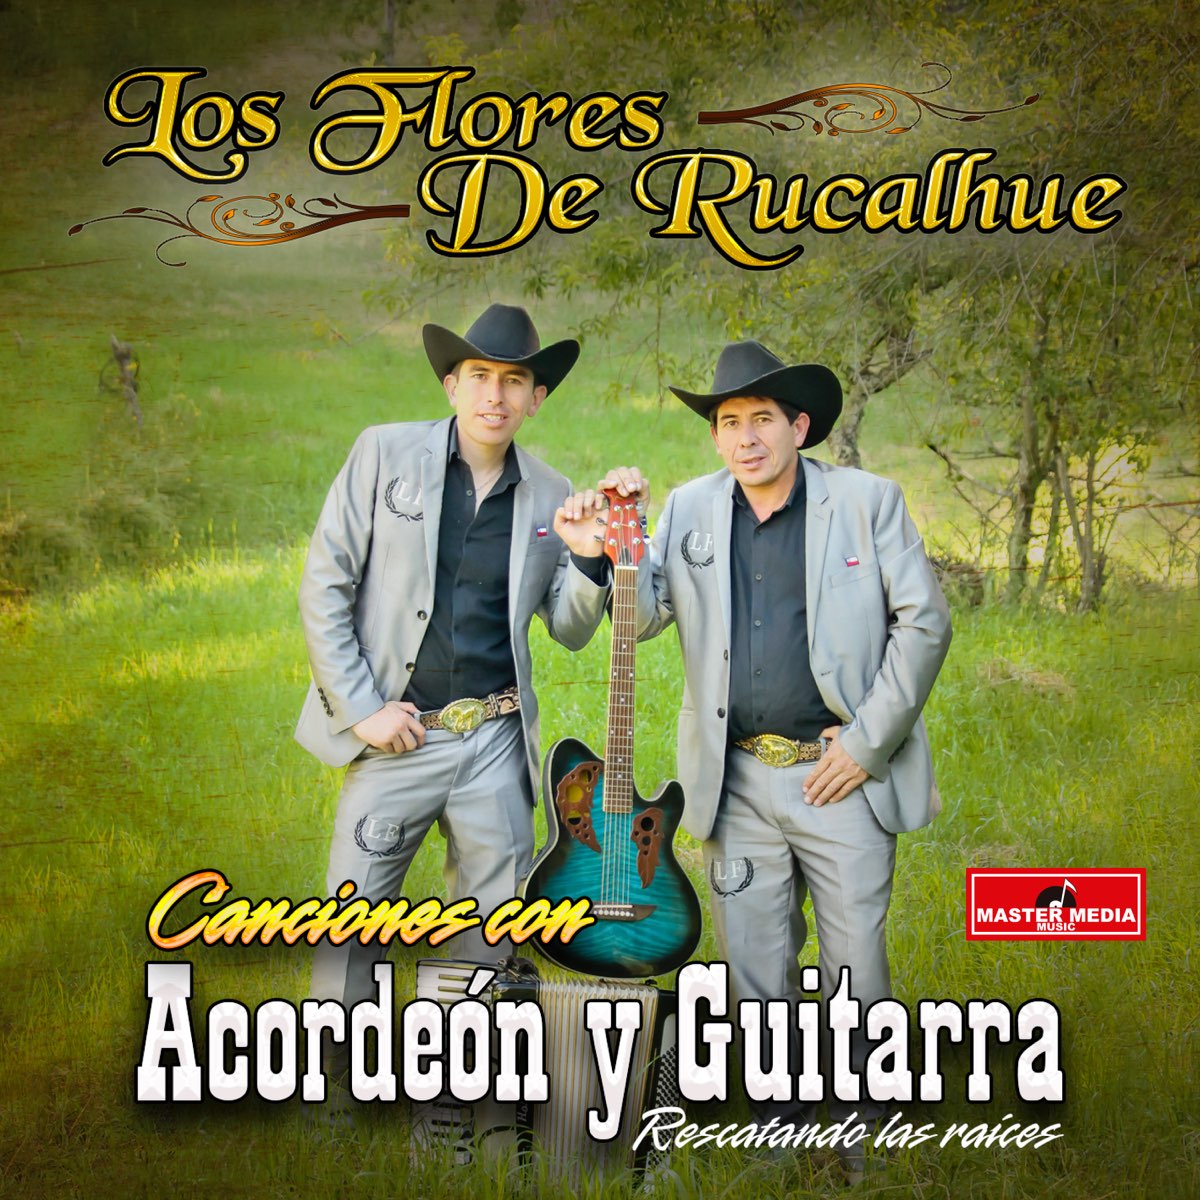 Canciones Con Acordeón y Guitarra: Recordando las Raíces by Los Flores de  Rucalhue on Apple Music